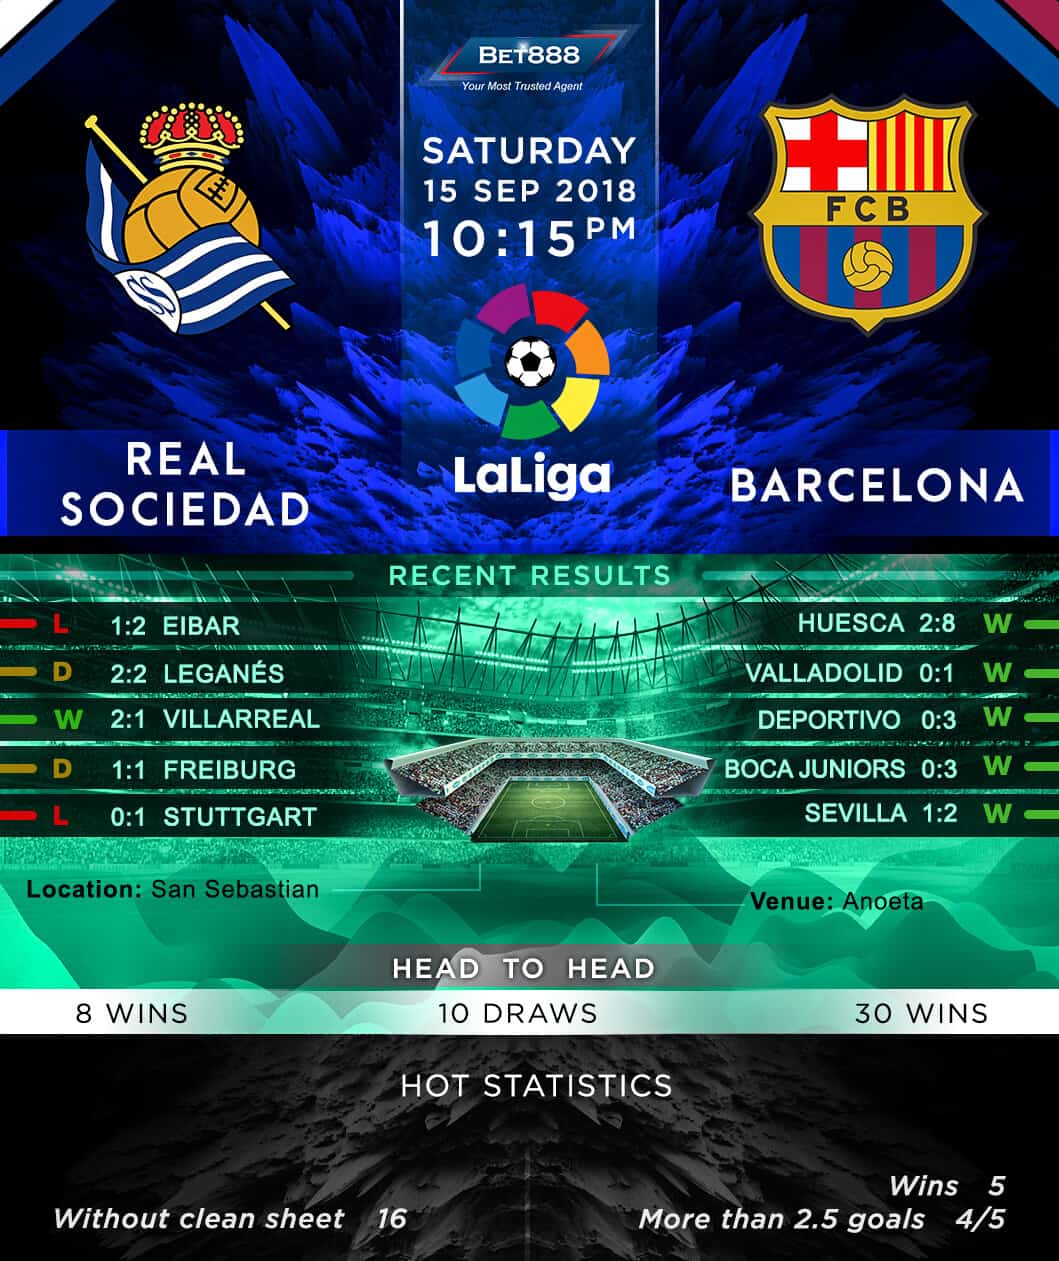 Real Sociedad vs Barcelona 15/09/18